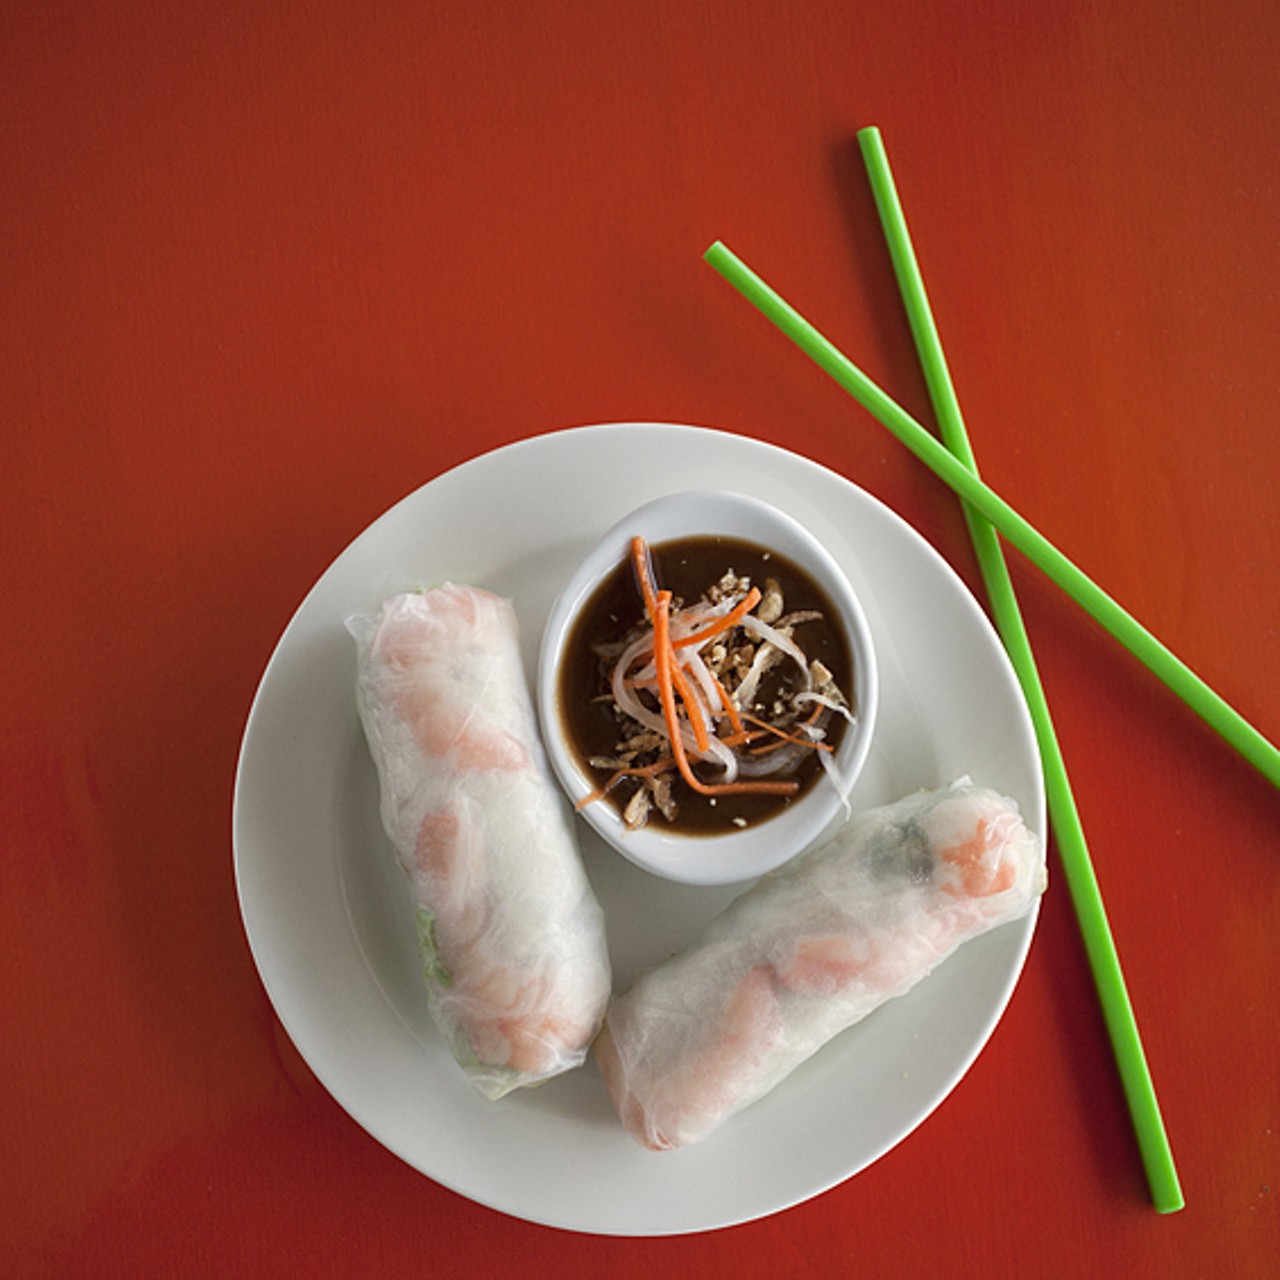 Goi Cuon, spring rolls with shrimp and pork.